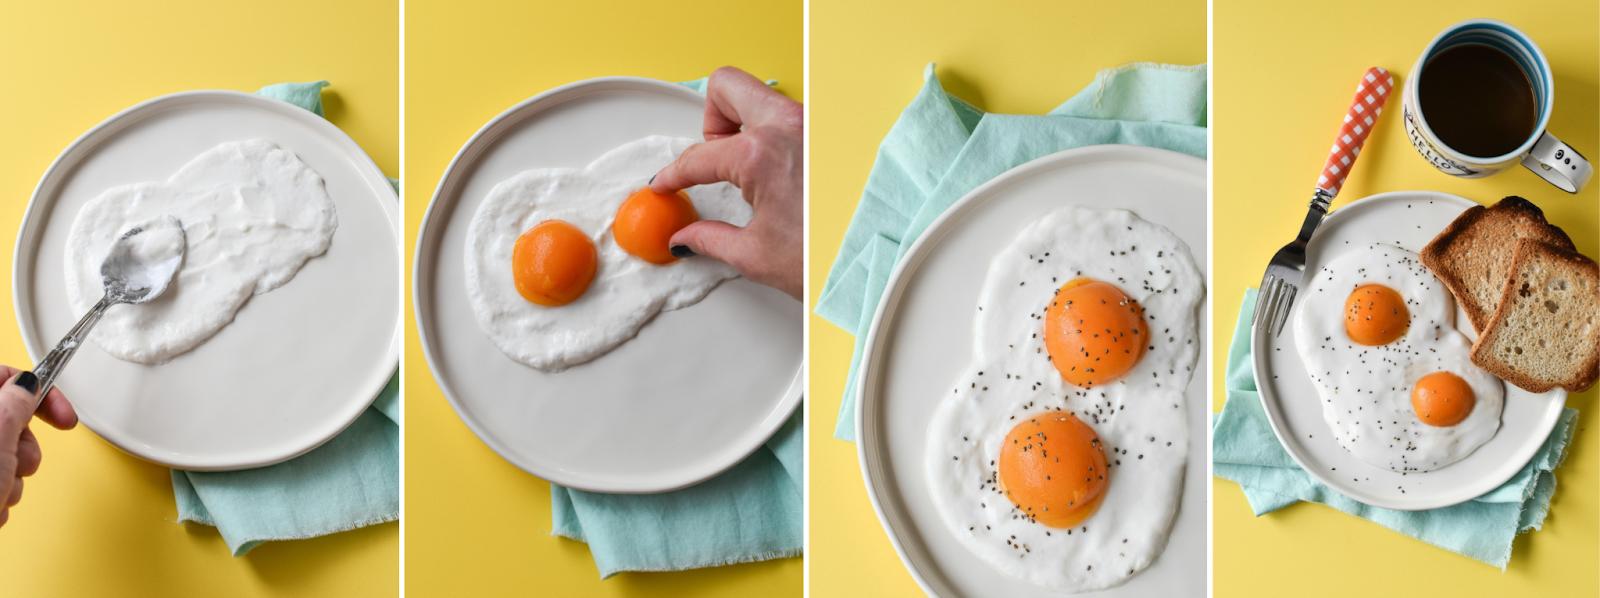 Bữa sáng kiểu Anh “giả” cần đầu tư hơn một chút vì bạn phải làm món trứng tráng từ sữa chua, mơ hoặc đào ngâm rồi rắc hạt chia lên trên.  Thủ thuật này cũng thật ngoạn mục phải không?  (Nguồn ảnh: Fork and Beans)